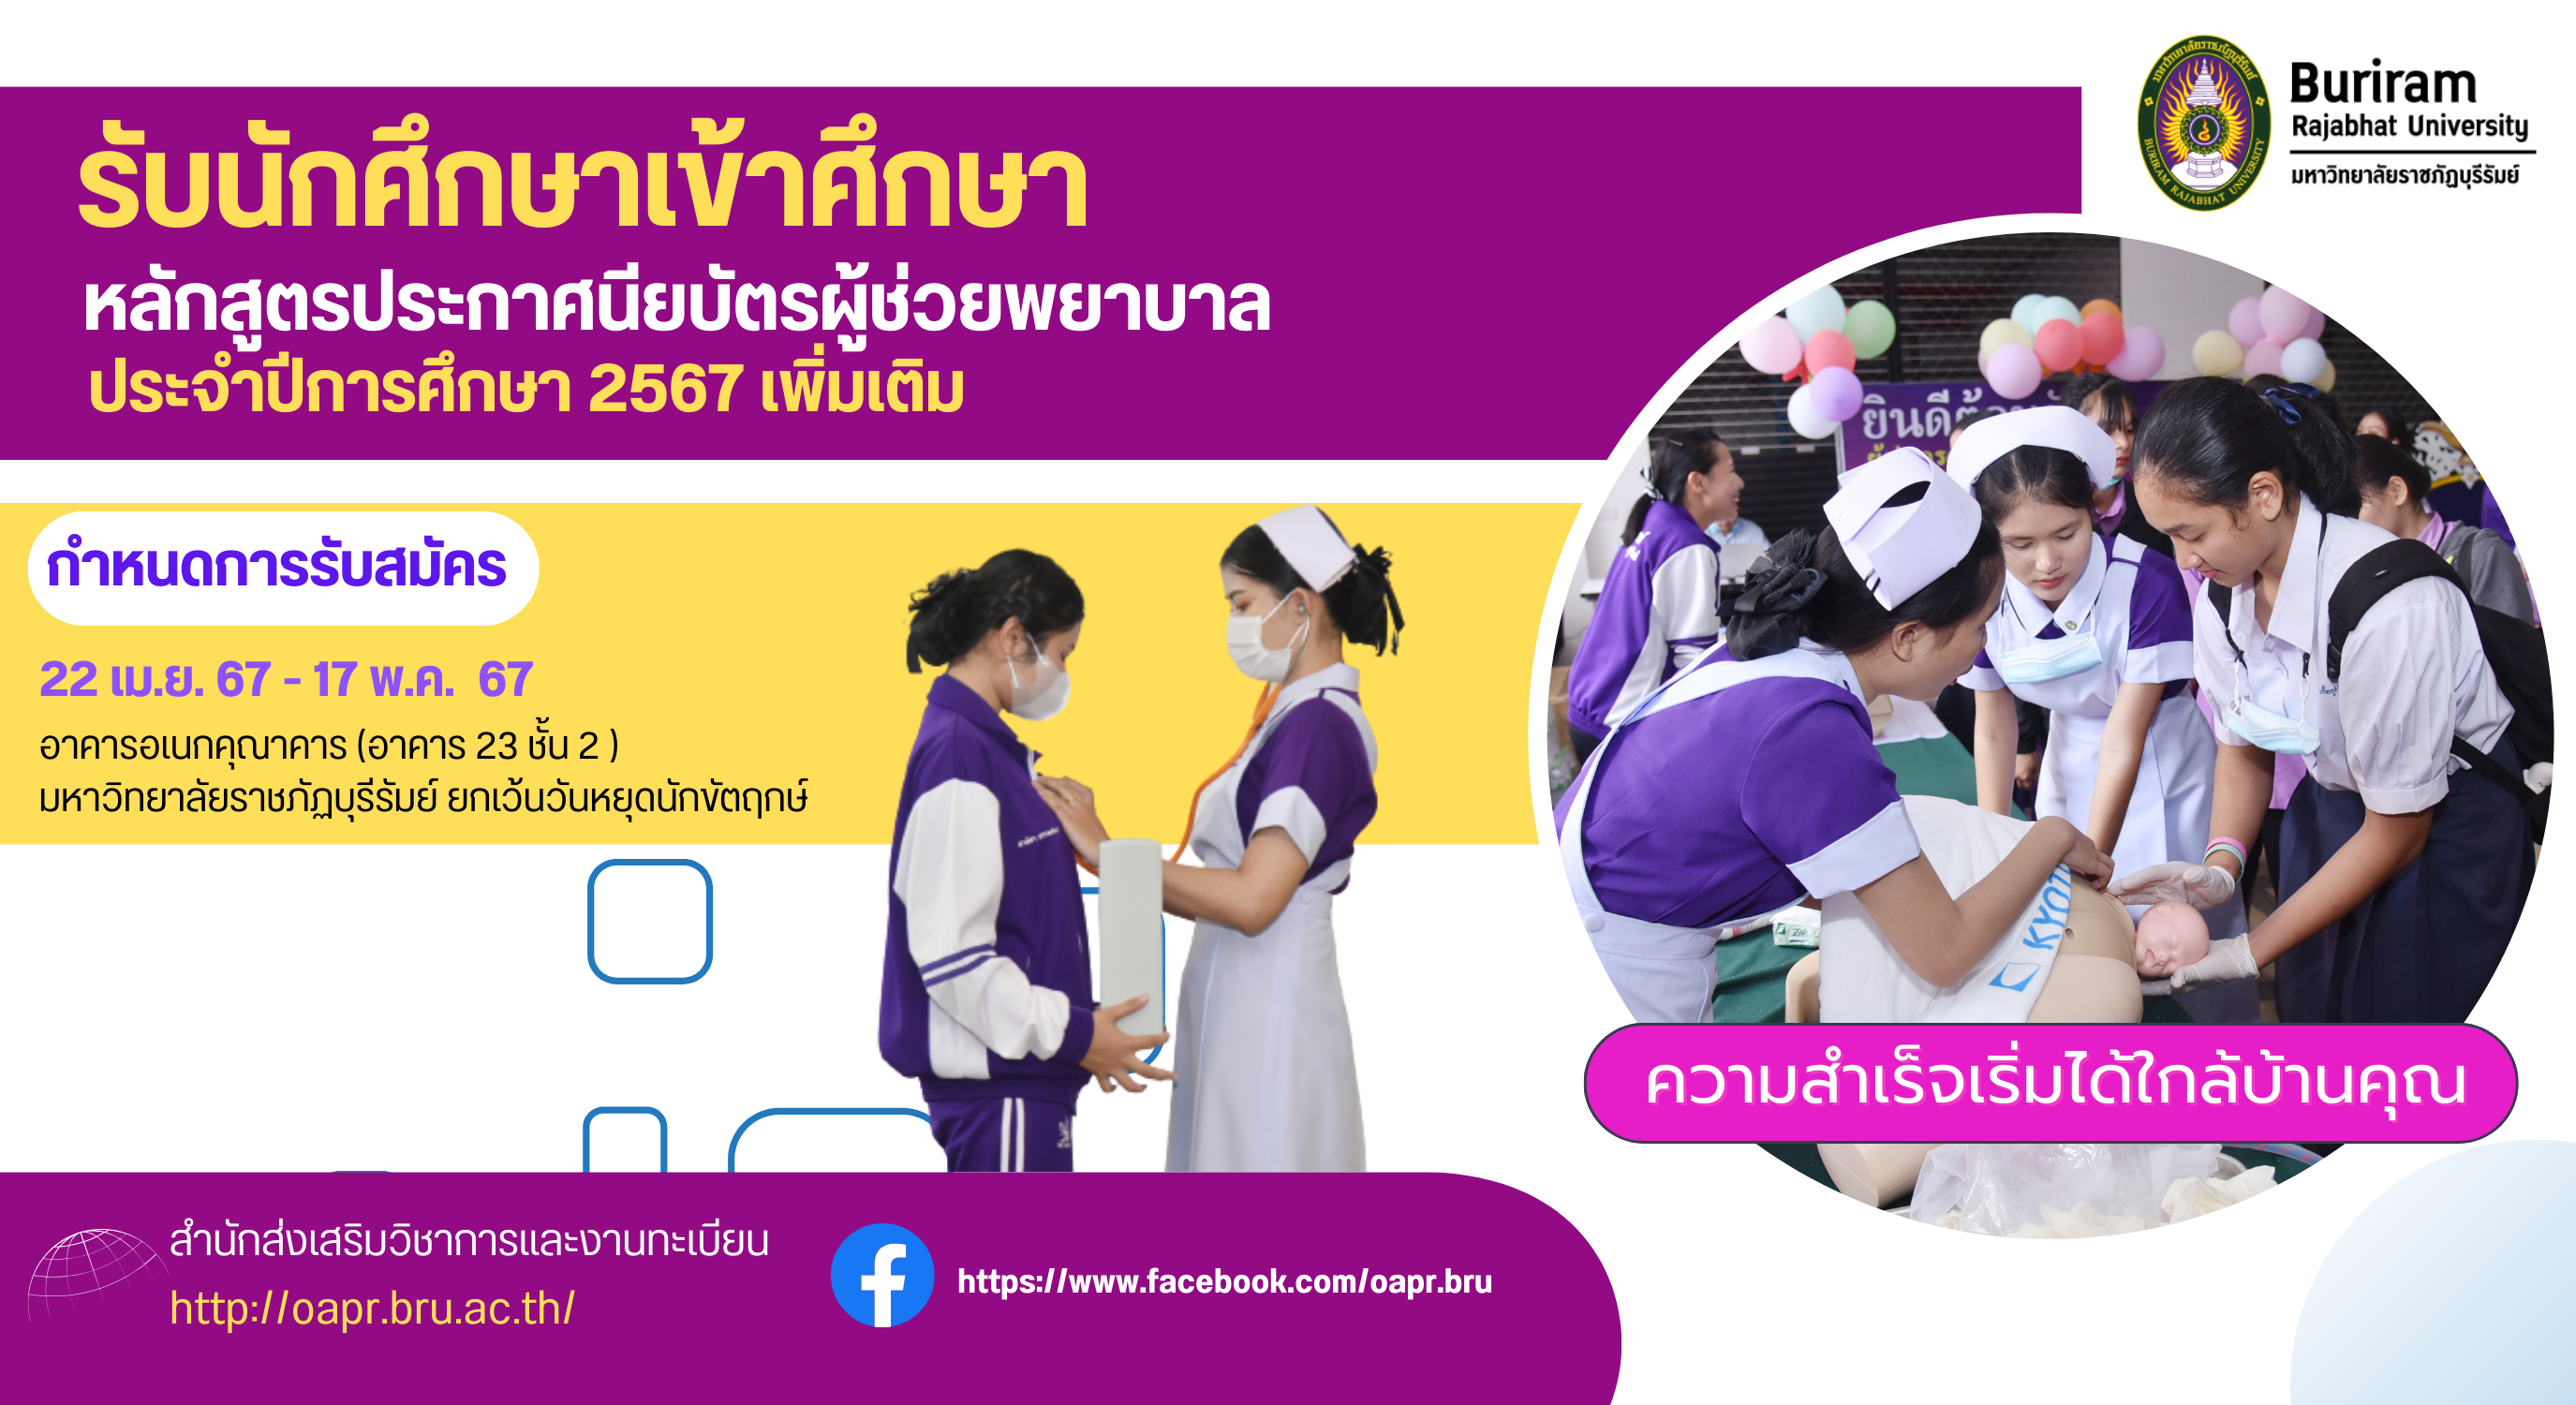 การรับนักศึกษาเข้าศึกษาหลักสูตรประกาศนียบัตรผู้ช่วยพยาบาล ประจำปีการศึกษา 2567 (เพิ่มเติม)